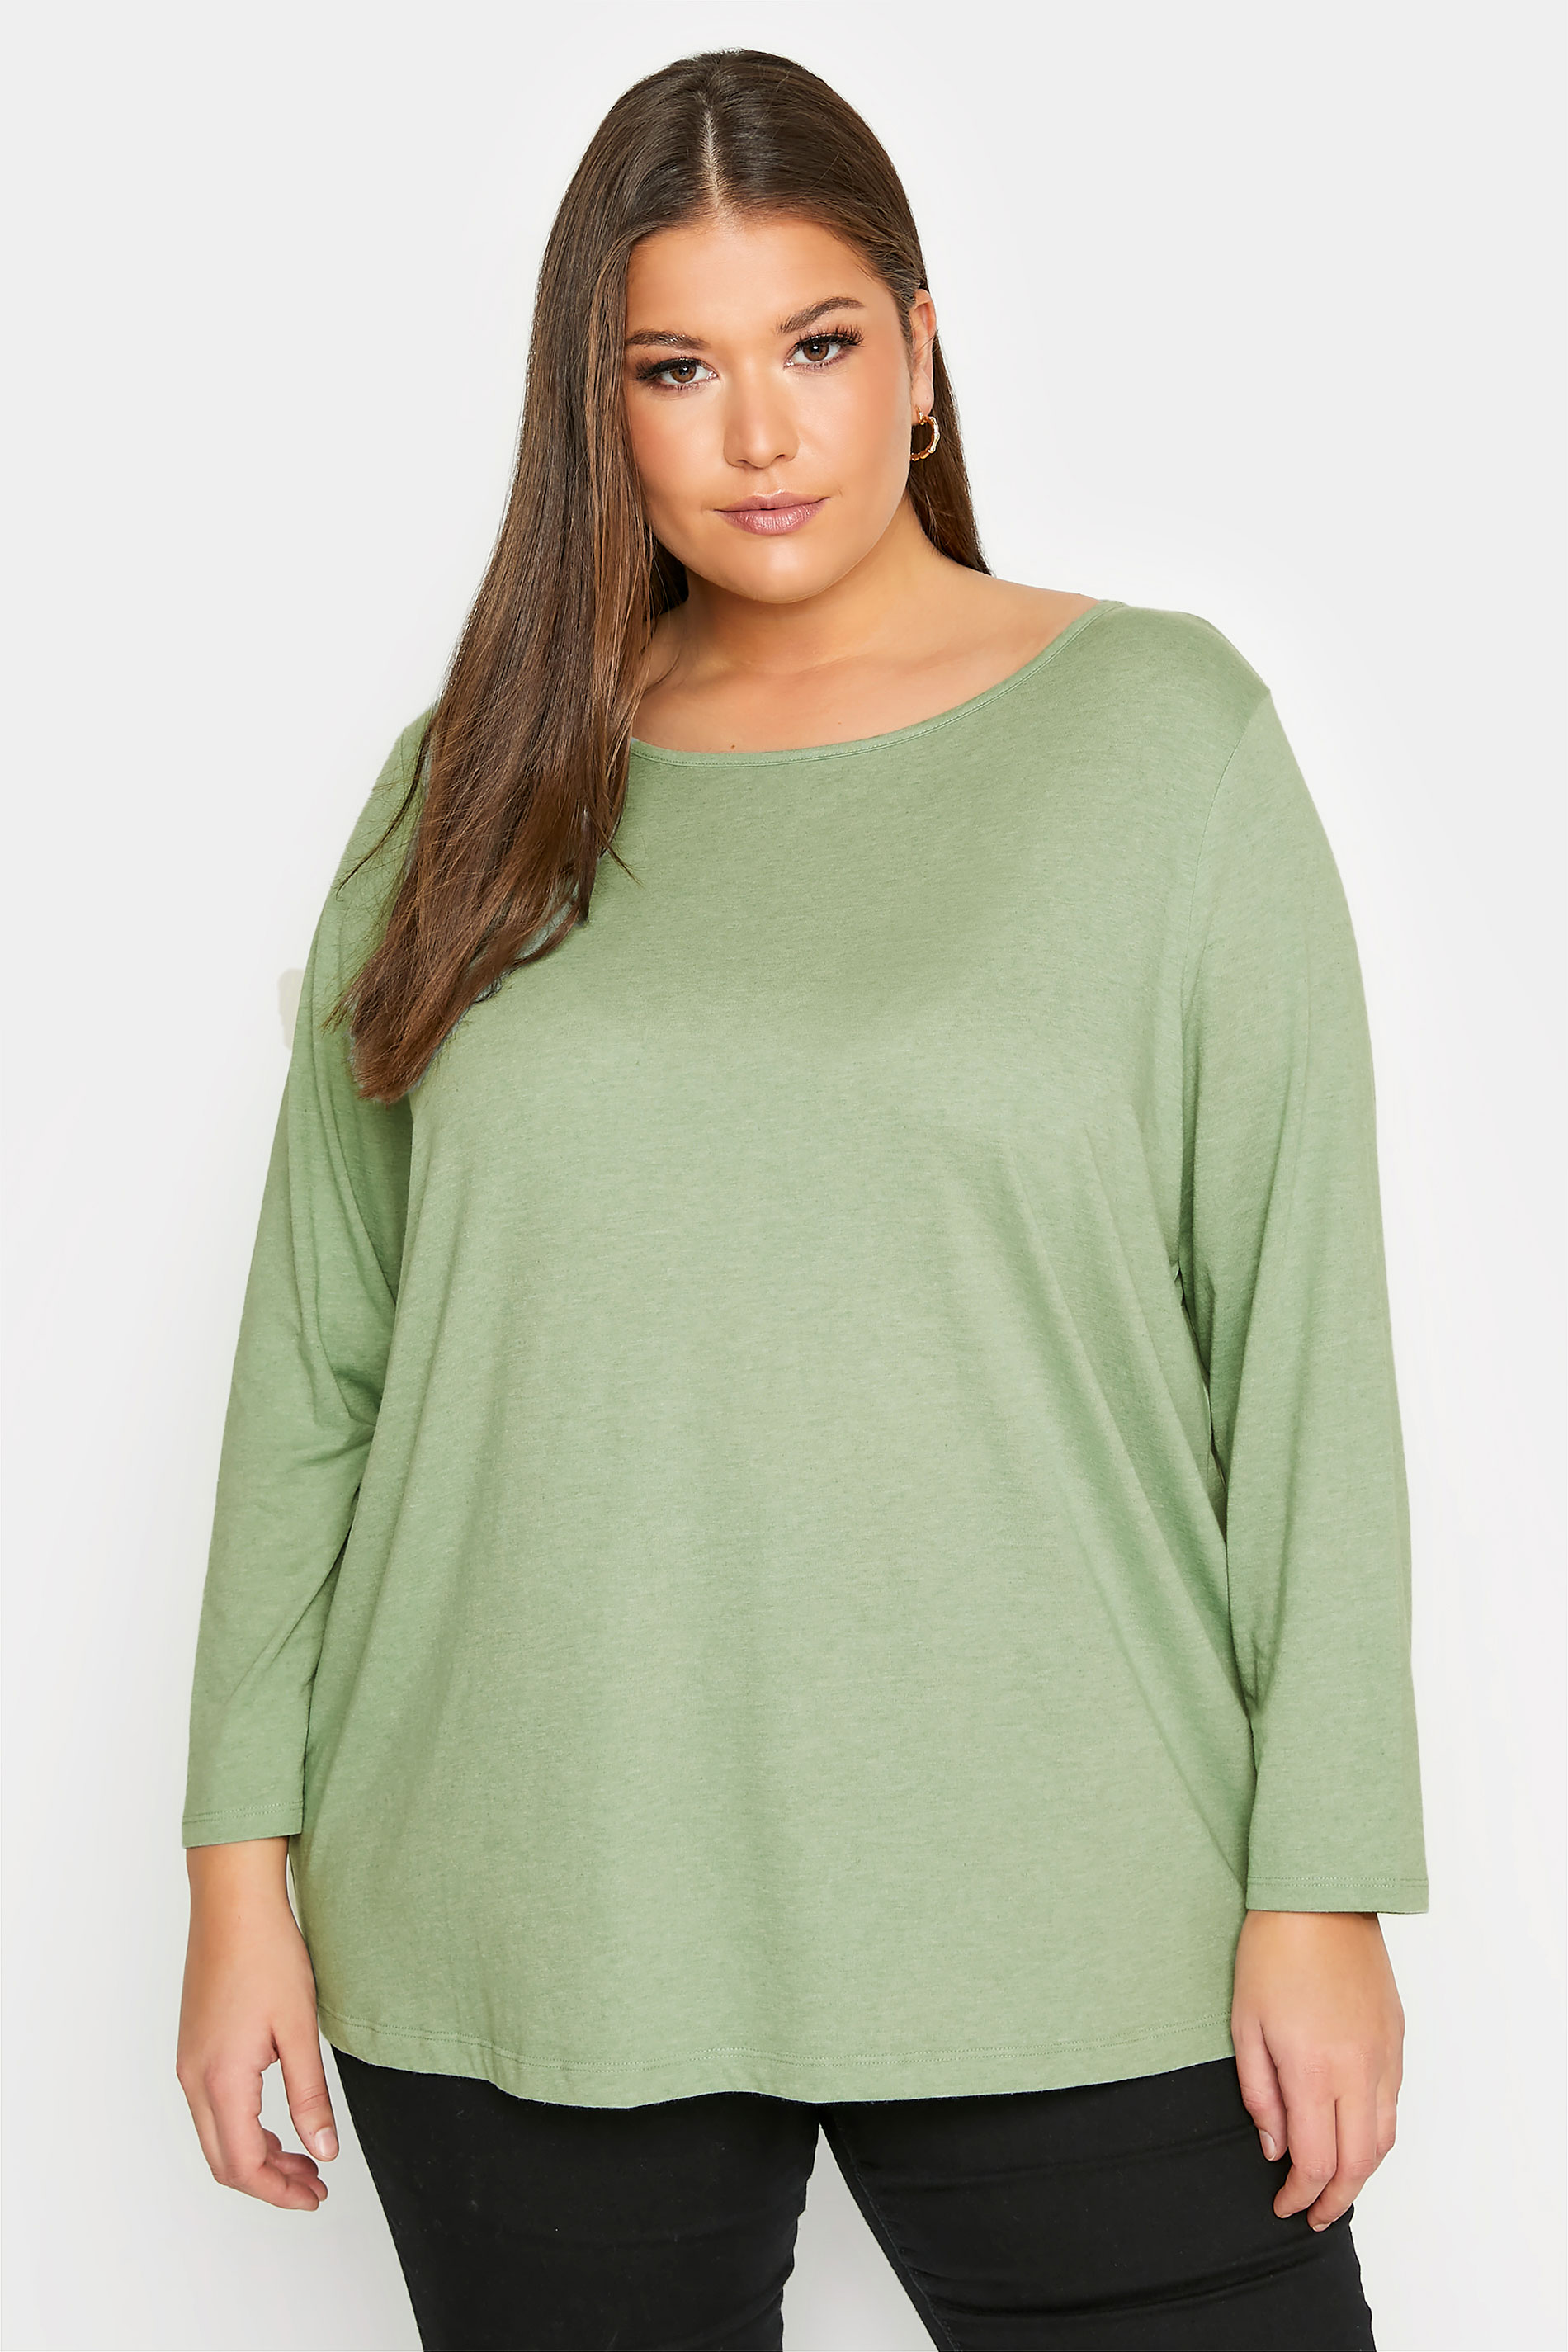 Sage Green Long Sleeve T-Shirt_A.jpg